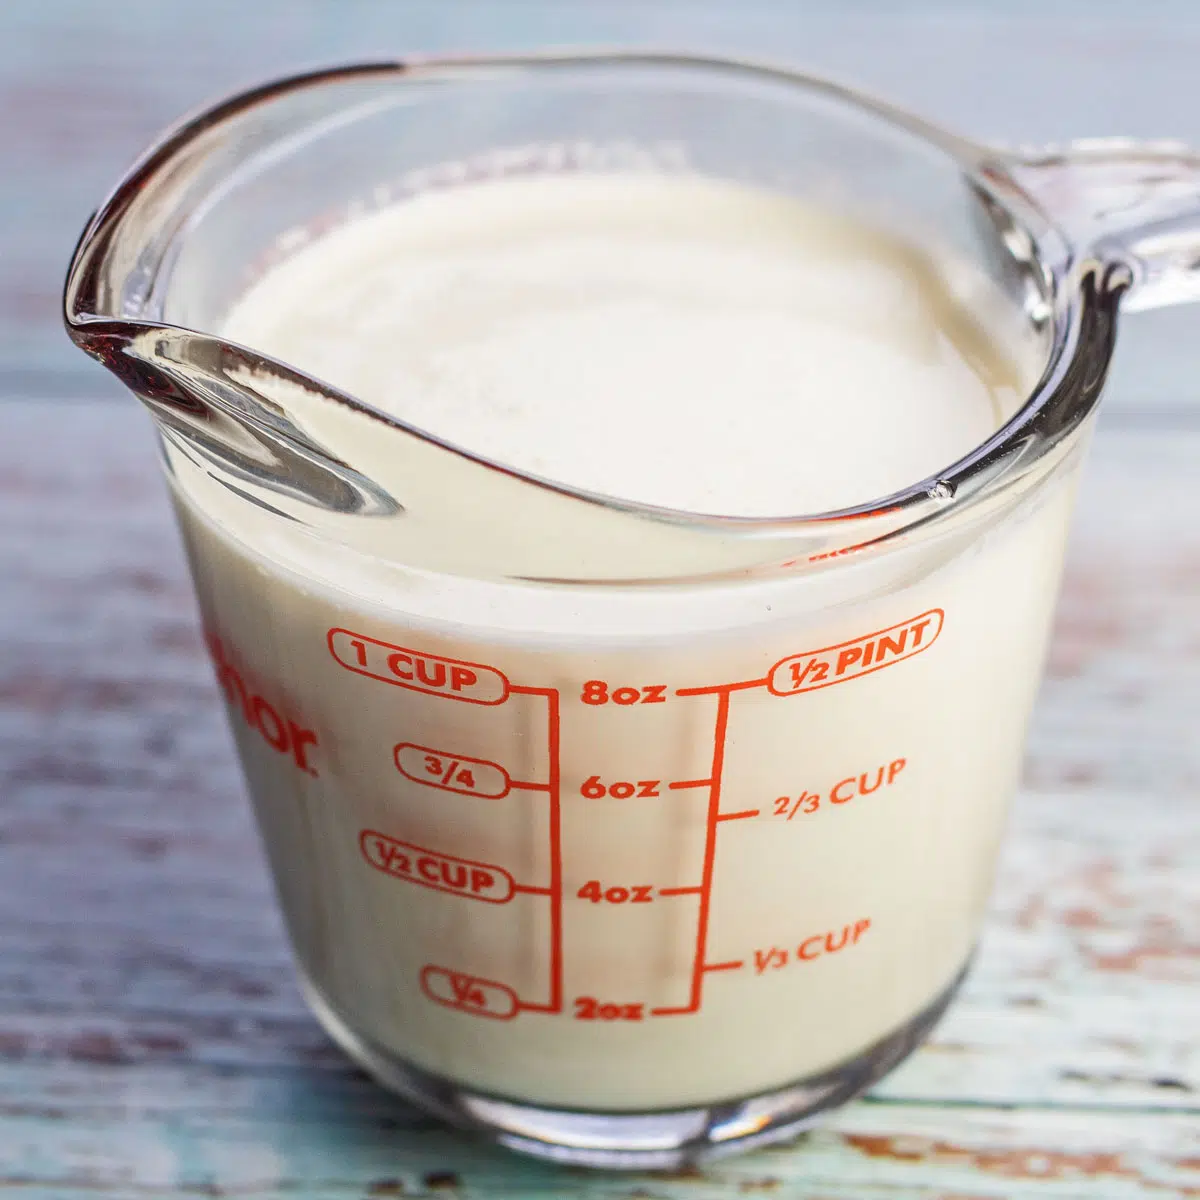 Crema espesa vs crema batida espesa imagen de crema batida espesa en una taza medidora.